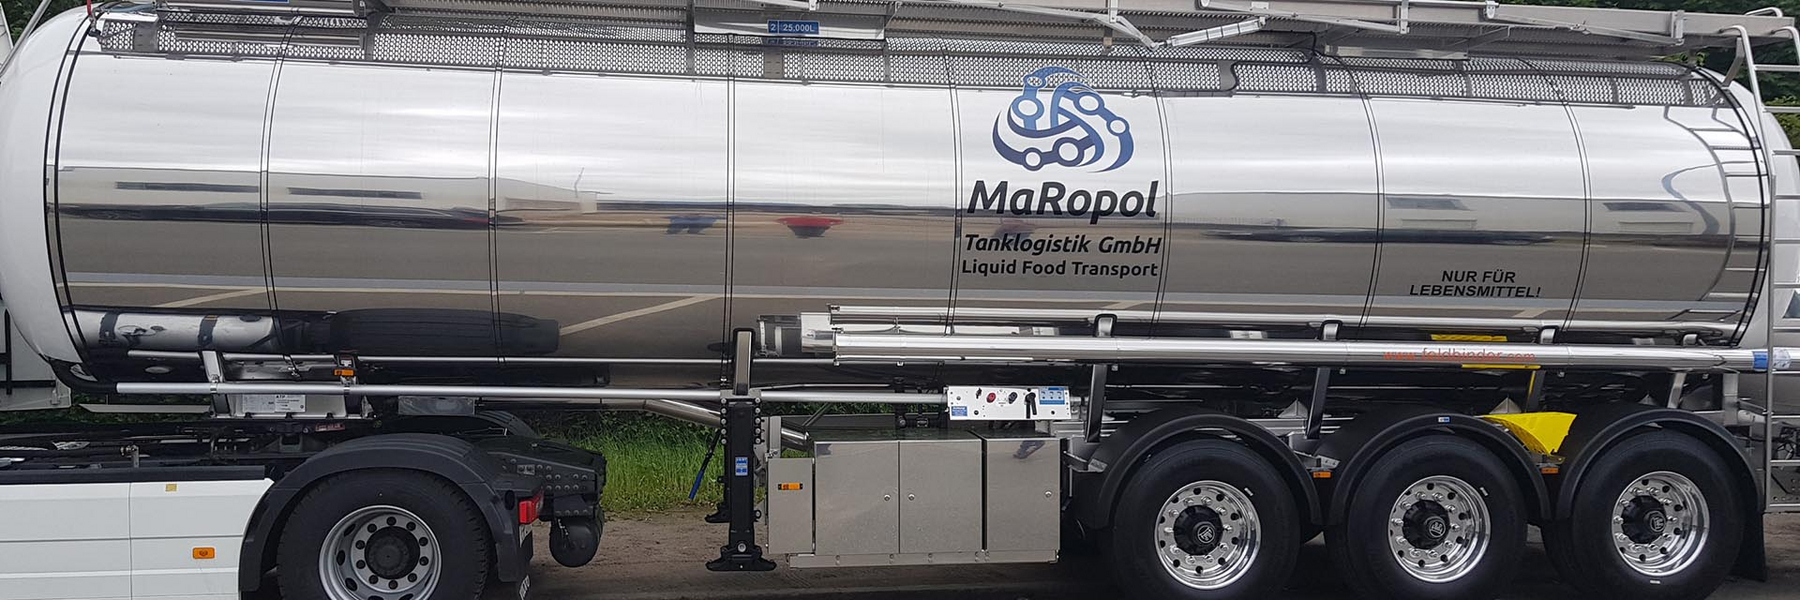 MaRopol Tanklogistik GmbH